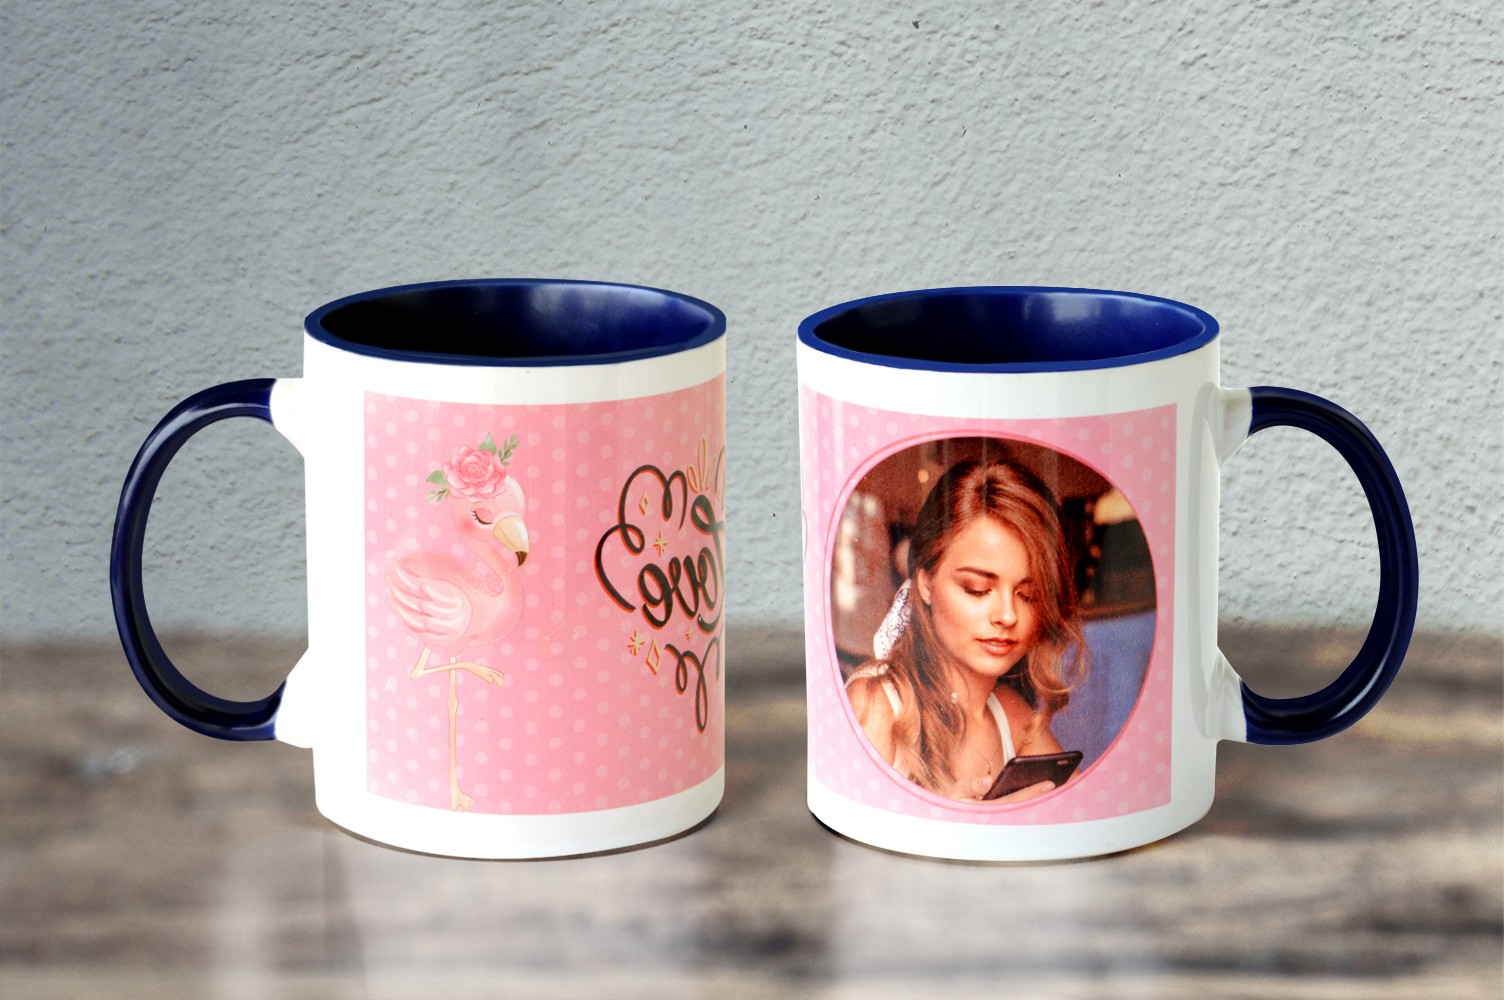 Ceramic Love Personalised Mug